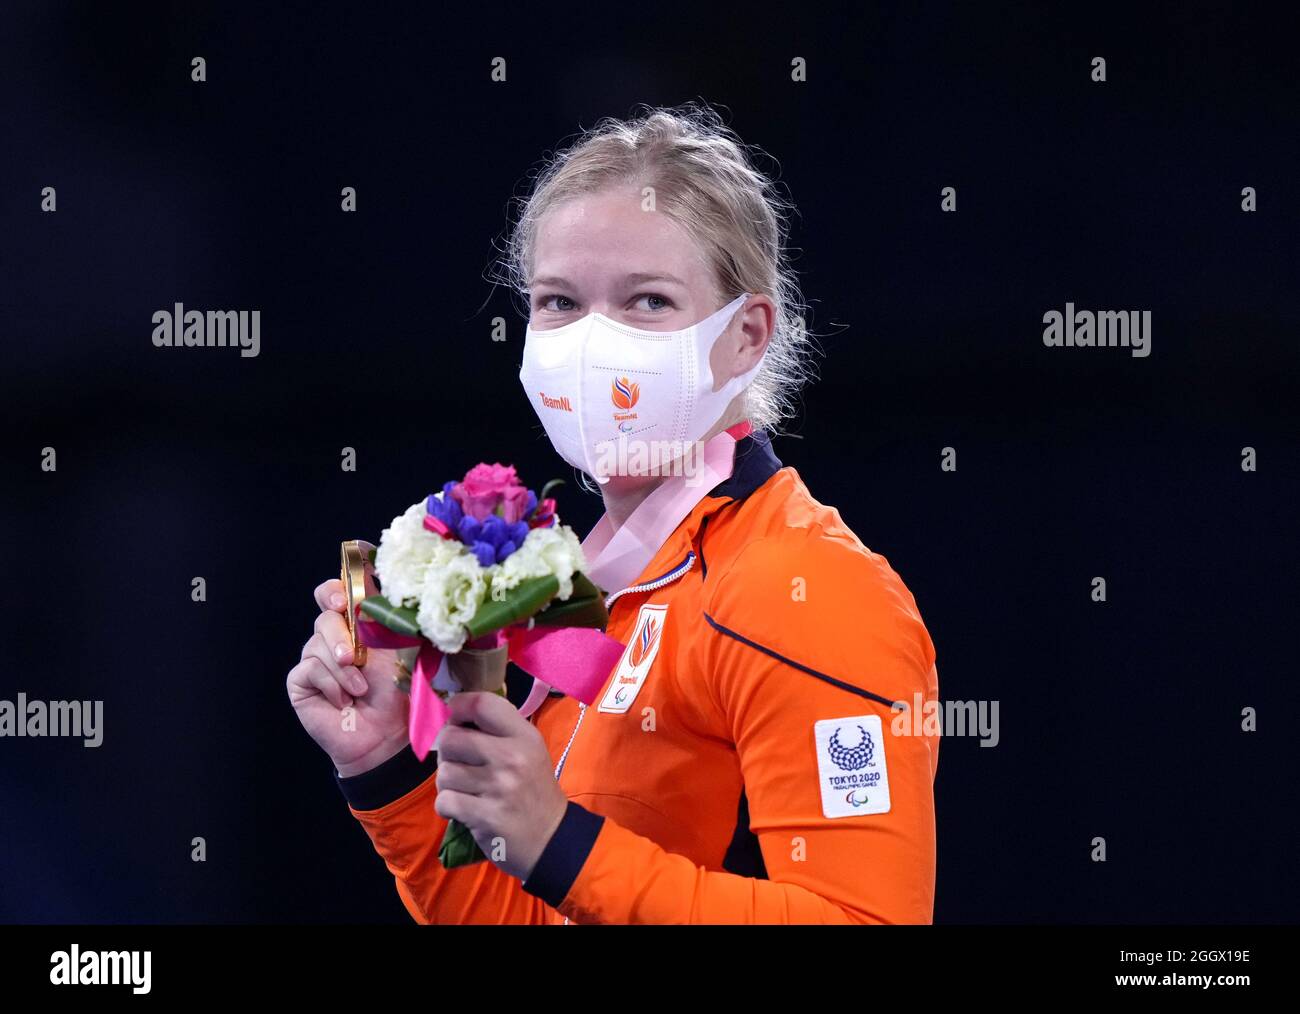 Diede de Groot, Niederländerin, feiert Gold das Gold-Einzel-Goldmedaillenspiel der Frauen im Ariake Tennis Park am 10. Tag der Paralympischen Spiele in Tokio 2020 in Japan. Bilddatum: Freitag, 3. September 2021. Stockfoto